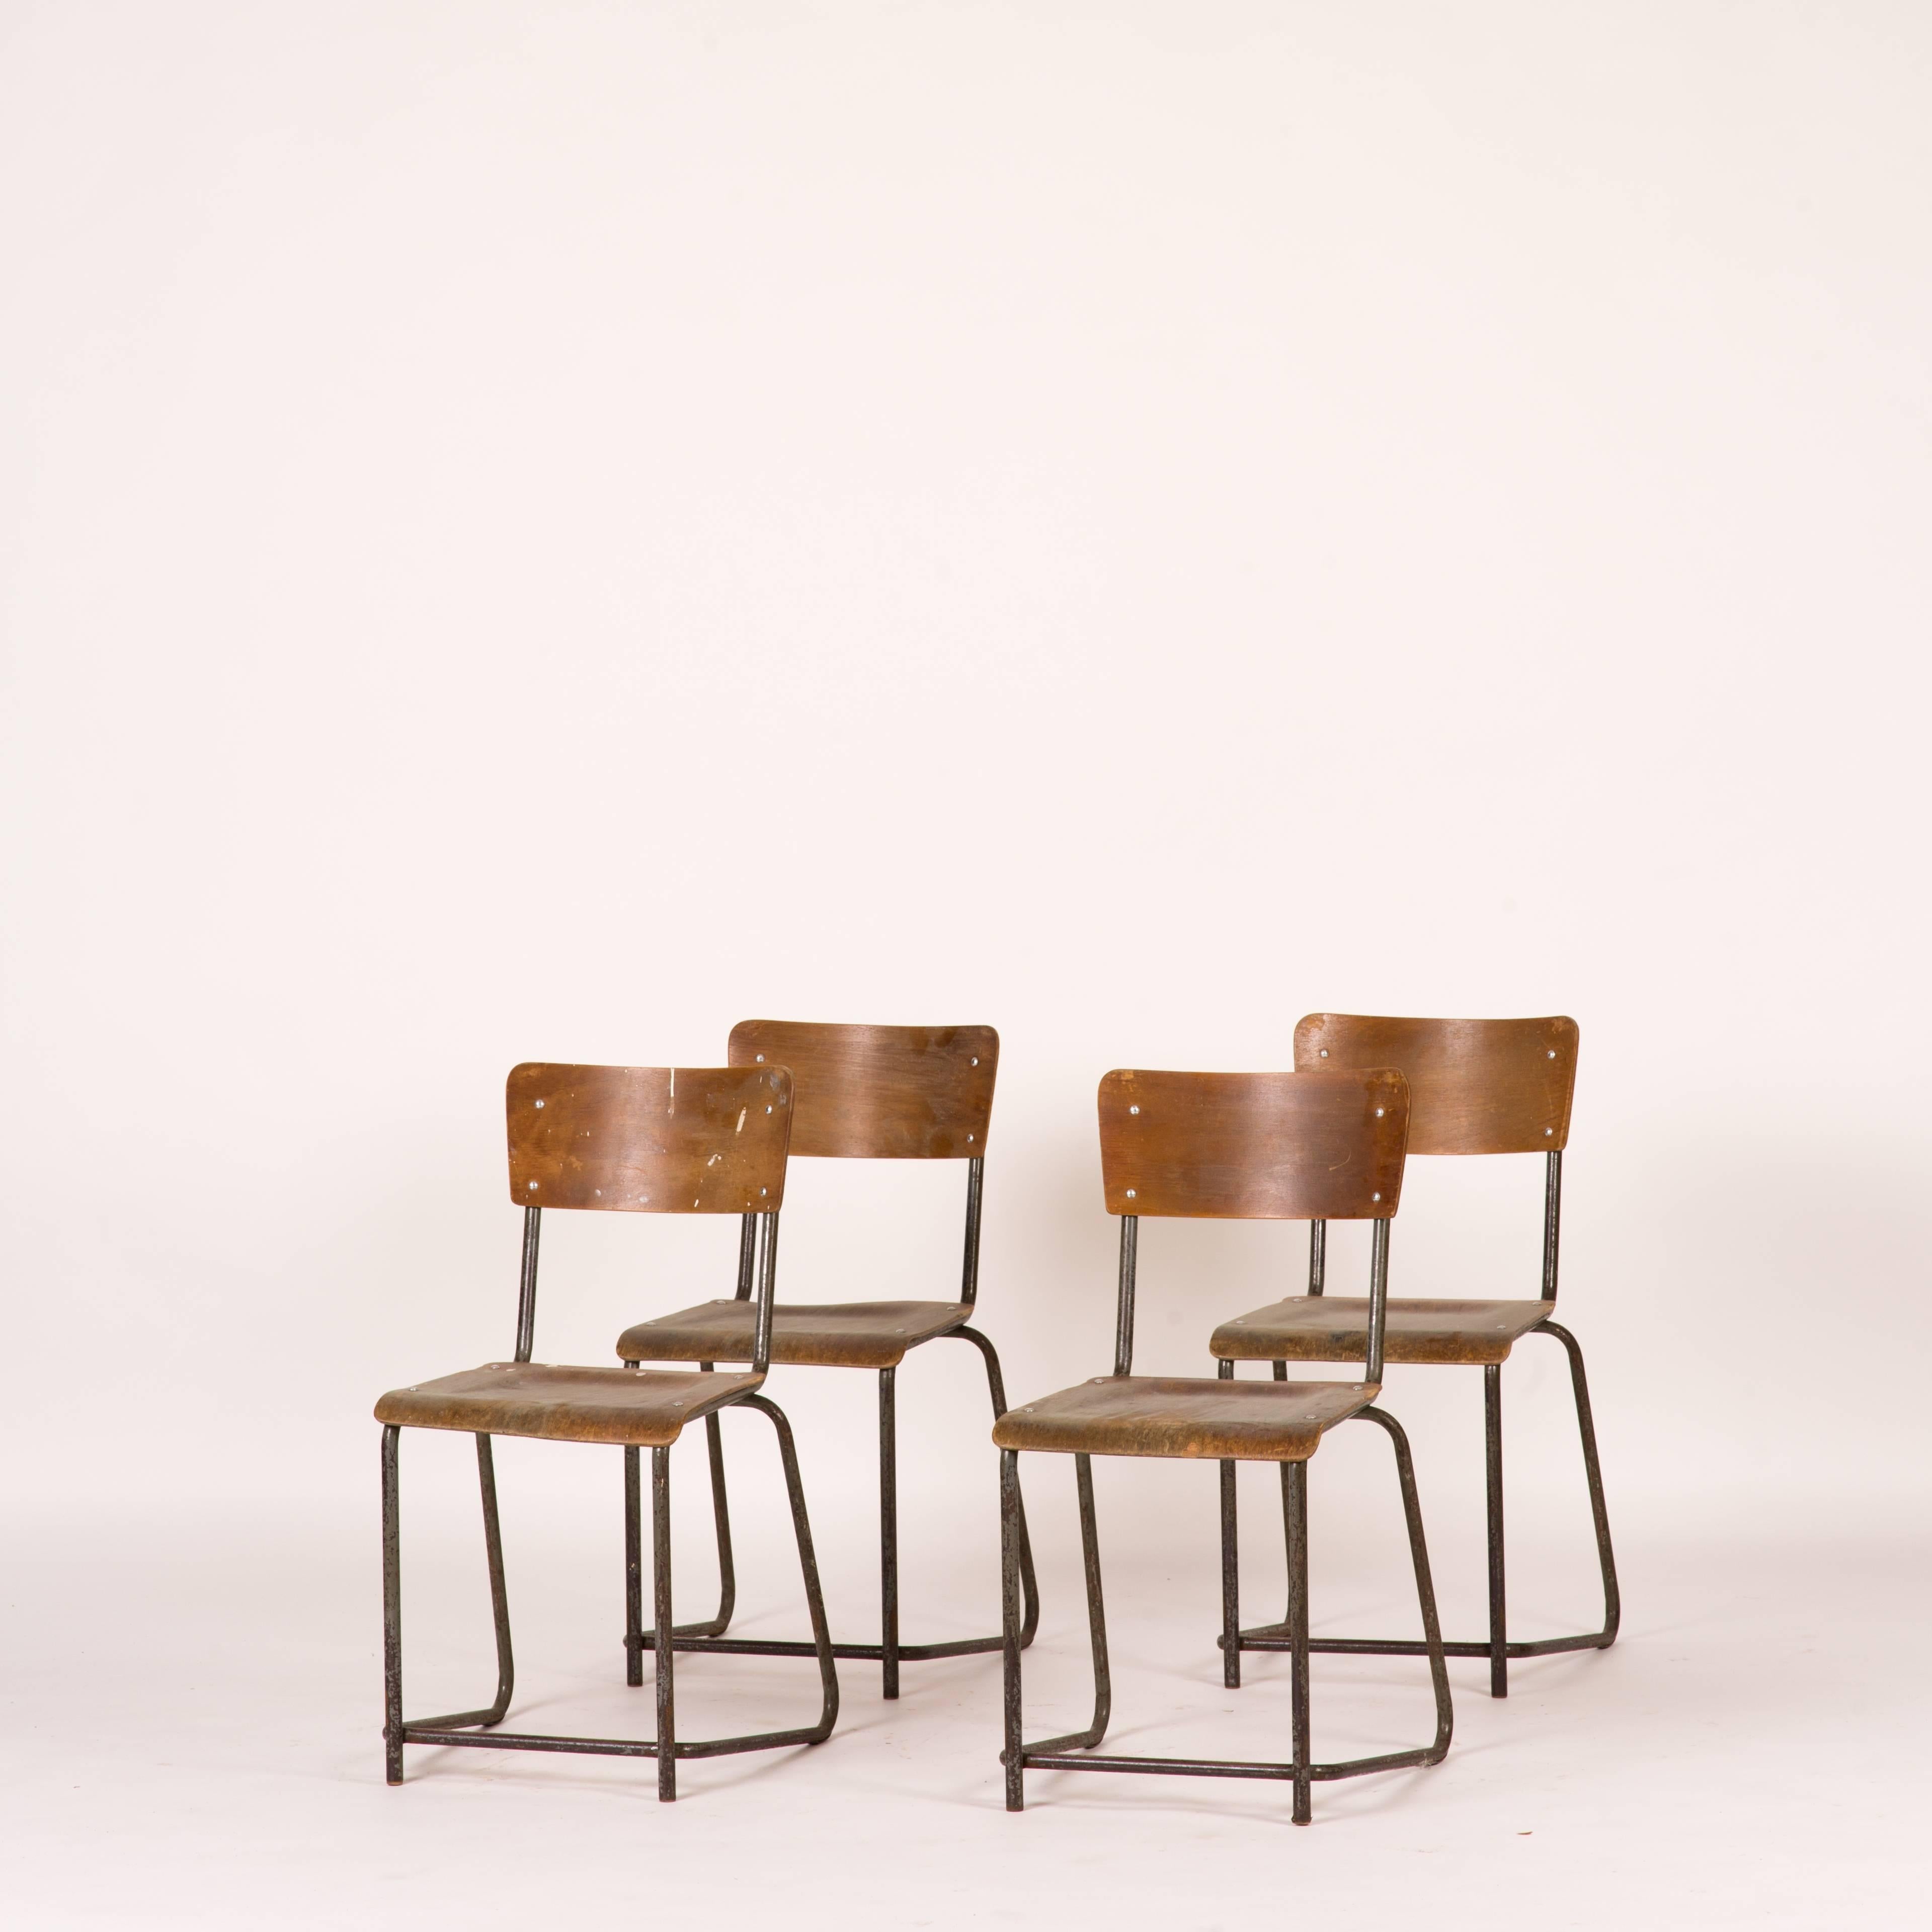 Satz von 8 Esszimmerstühlen aus Metall und Bugholz aus dem England der 1930er Jahre. Die Metallbeine haben ein wunderbar minimalistisches Design und eine leichte Patina. Die Bugholzsitze sind sanft geschwungen und sorgen für einen eleganten und